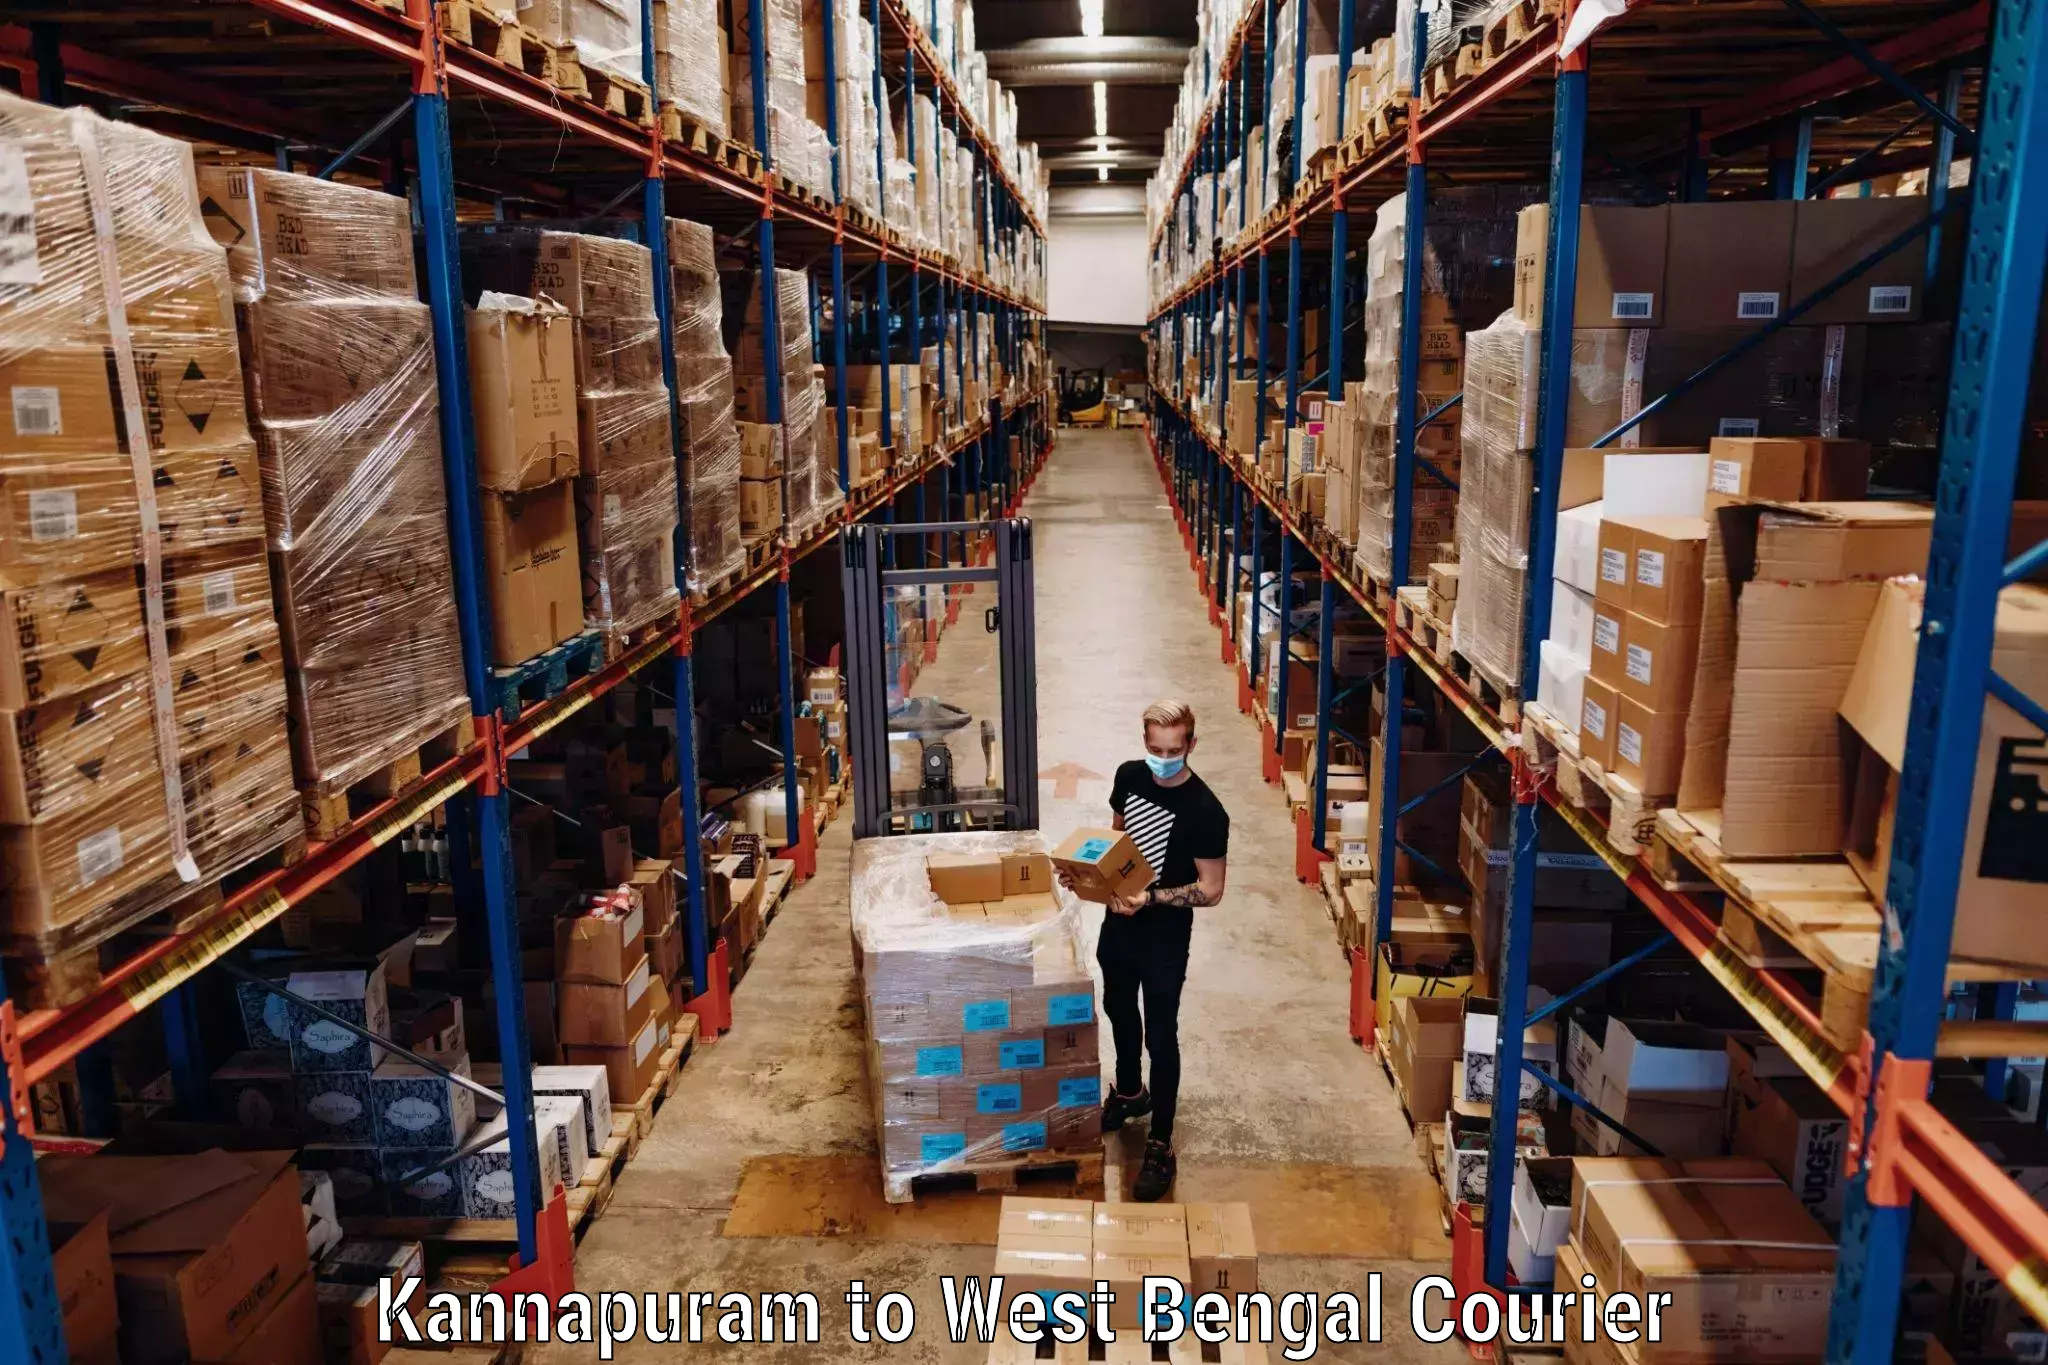 Hassle-free luggage shipping Kannapuram to West Bengal